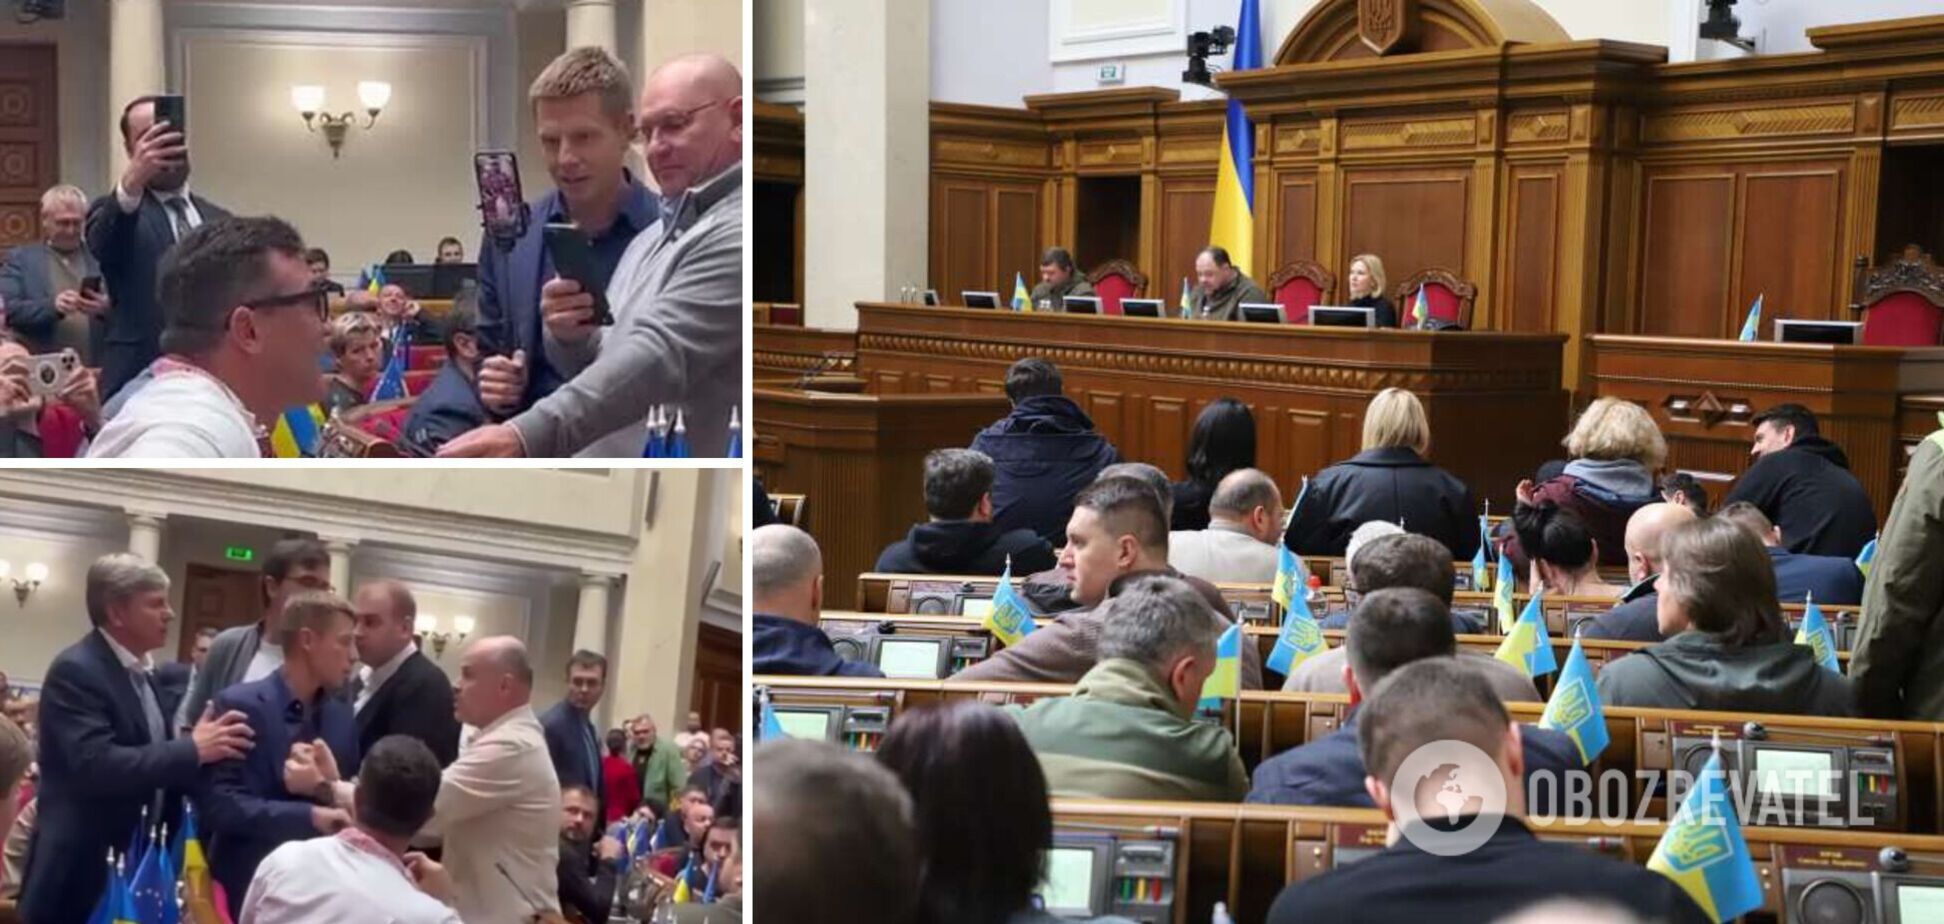 'Що з цим робити?' Українців обурила поведінка нардепів у Раді, розгорілися дискусії. Відео